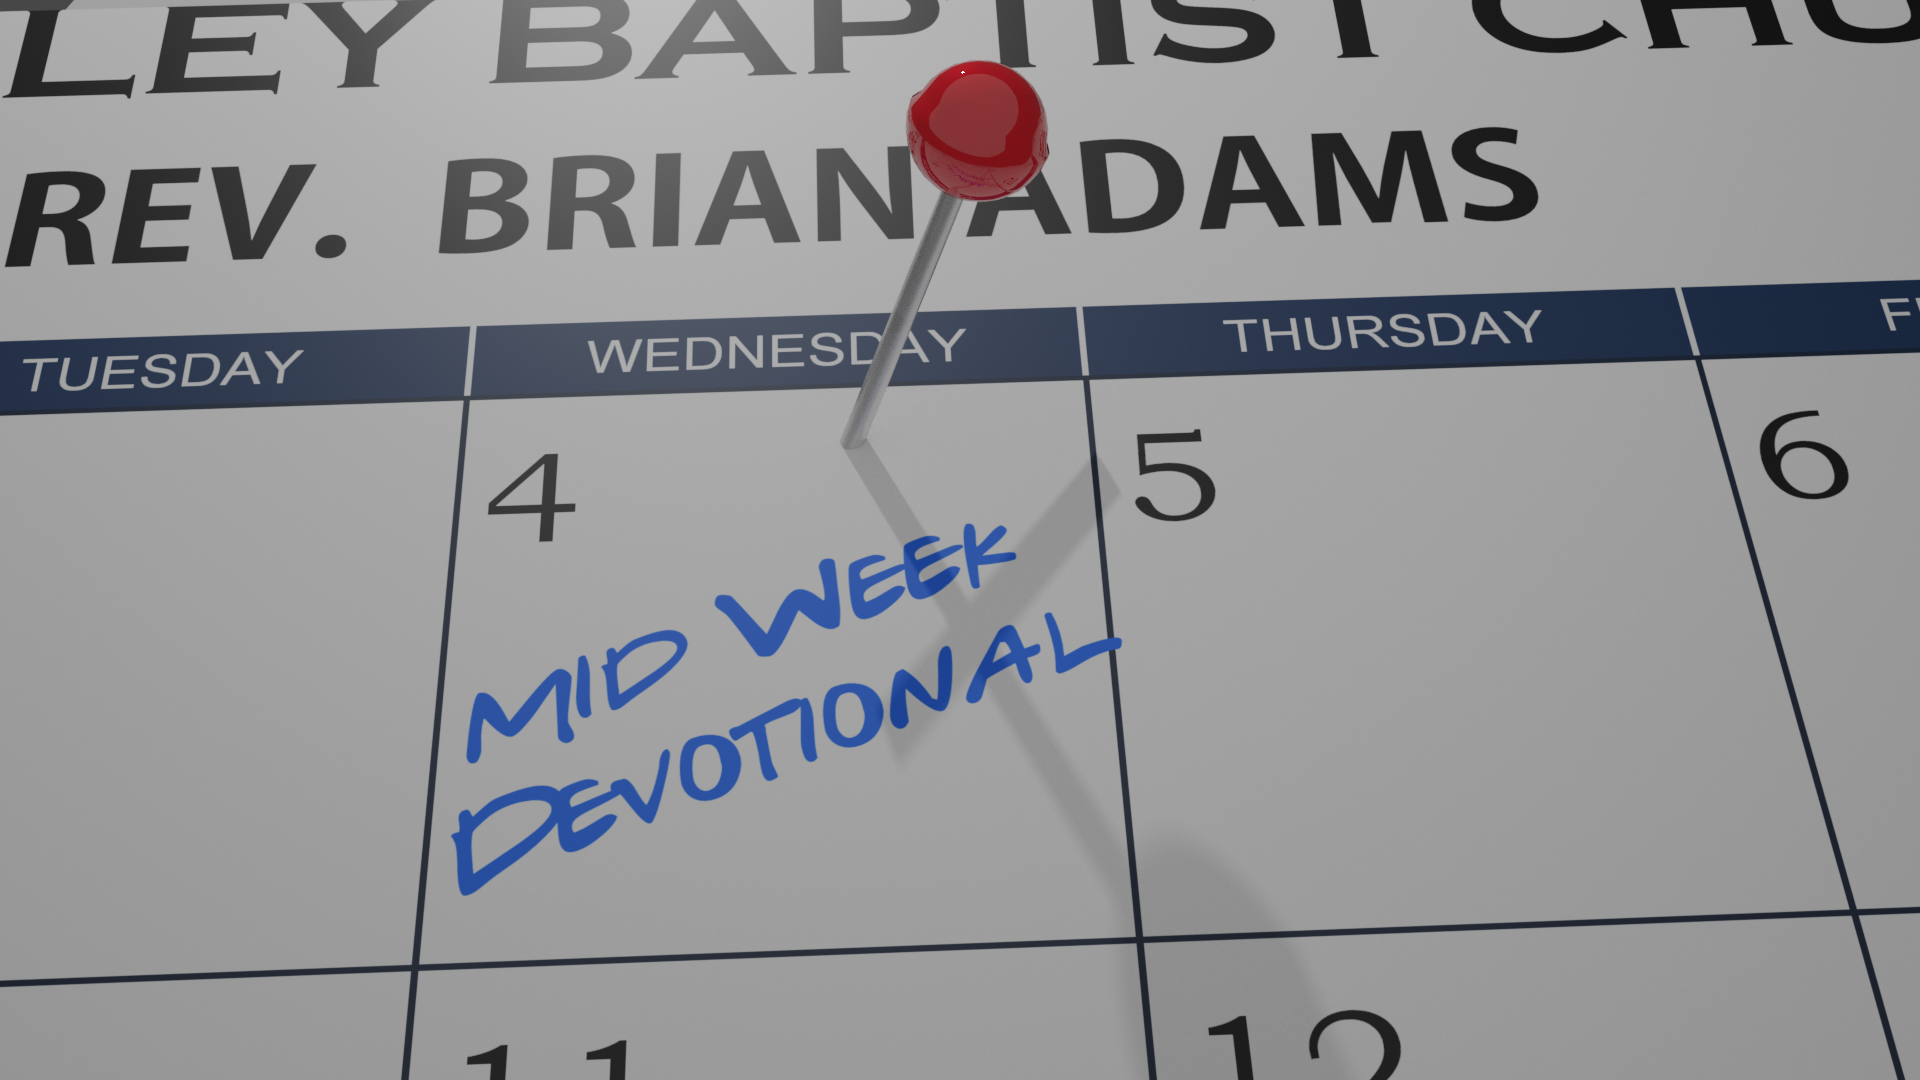 Mid-Week Devotional 2/17/21